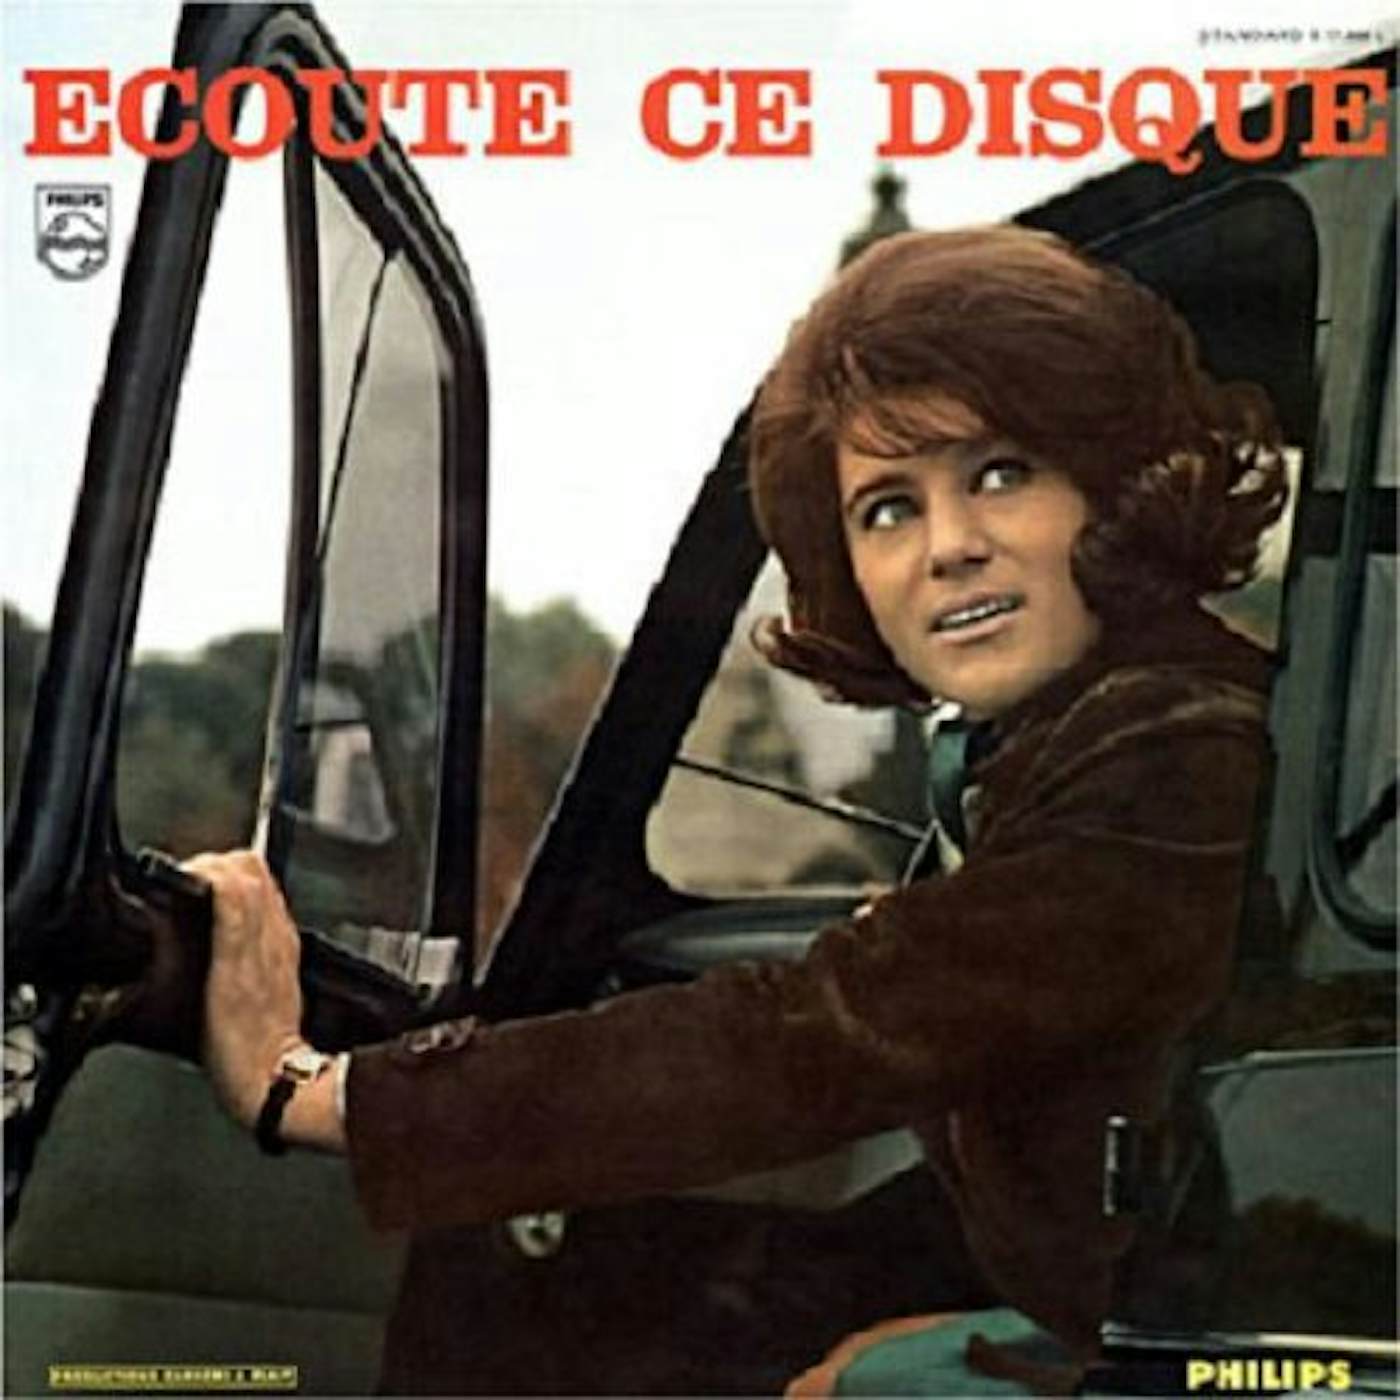 Sheila ECOUTE CE DISQUE: SPECIAL EDITION Vinyl Record